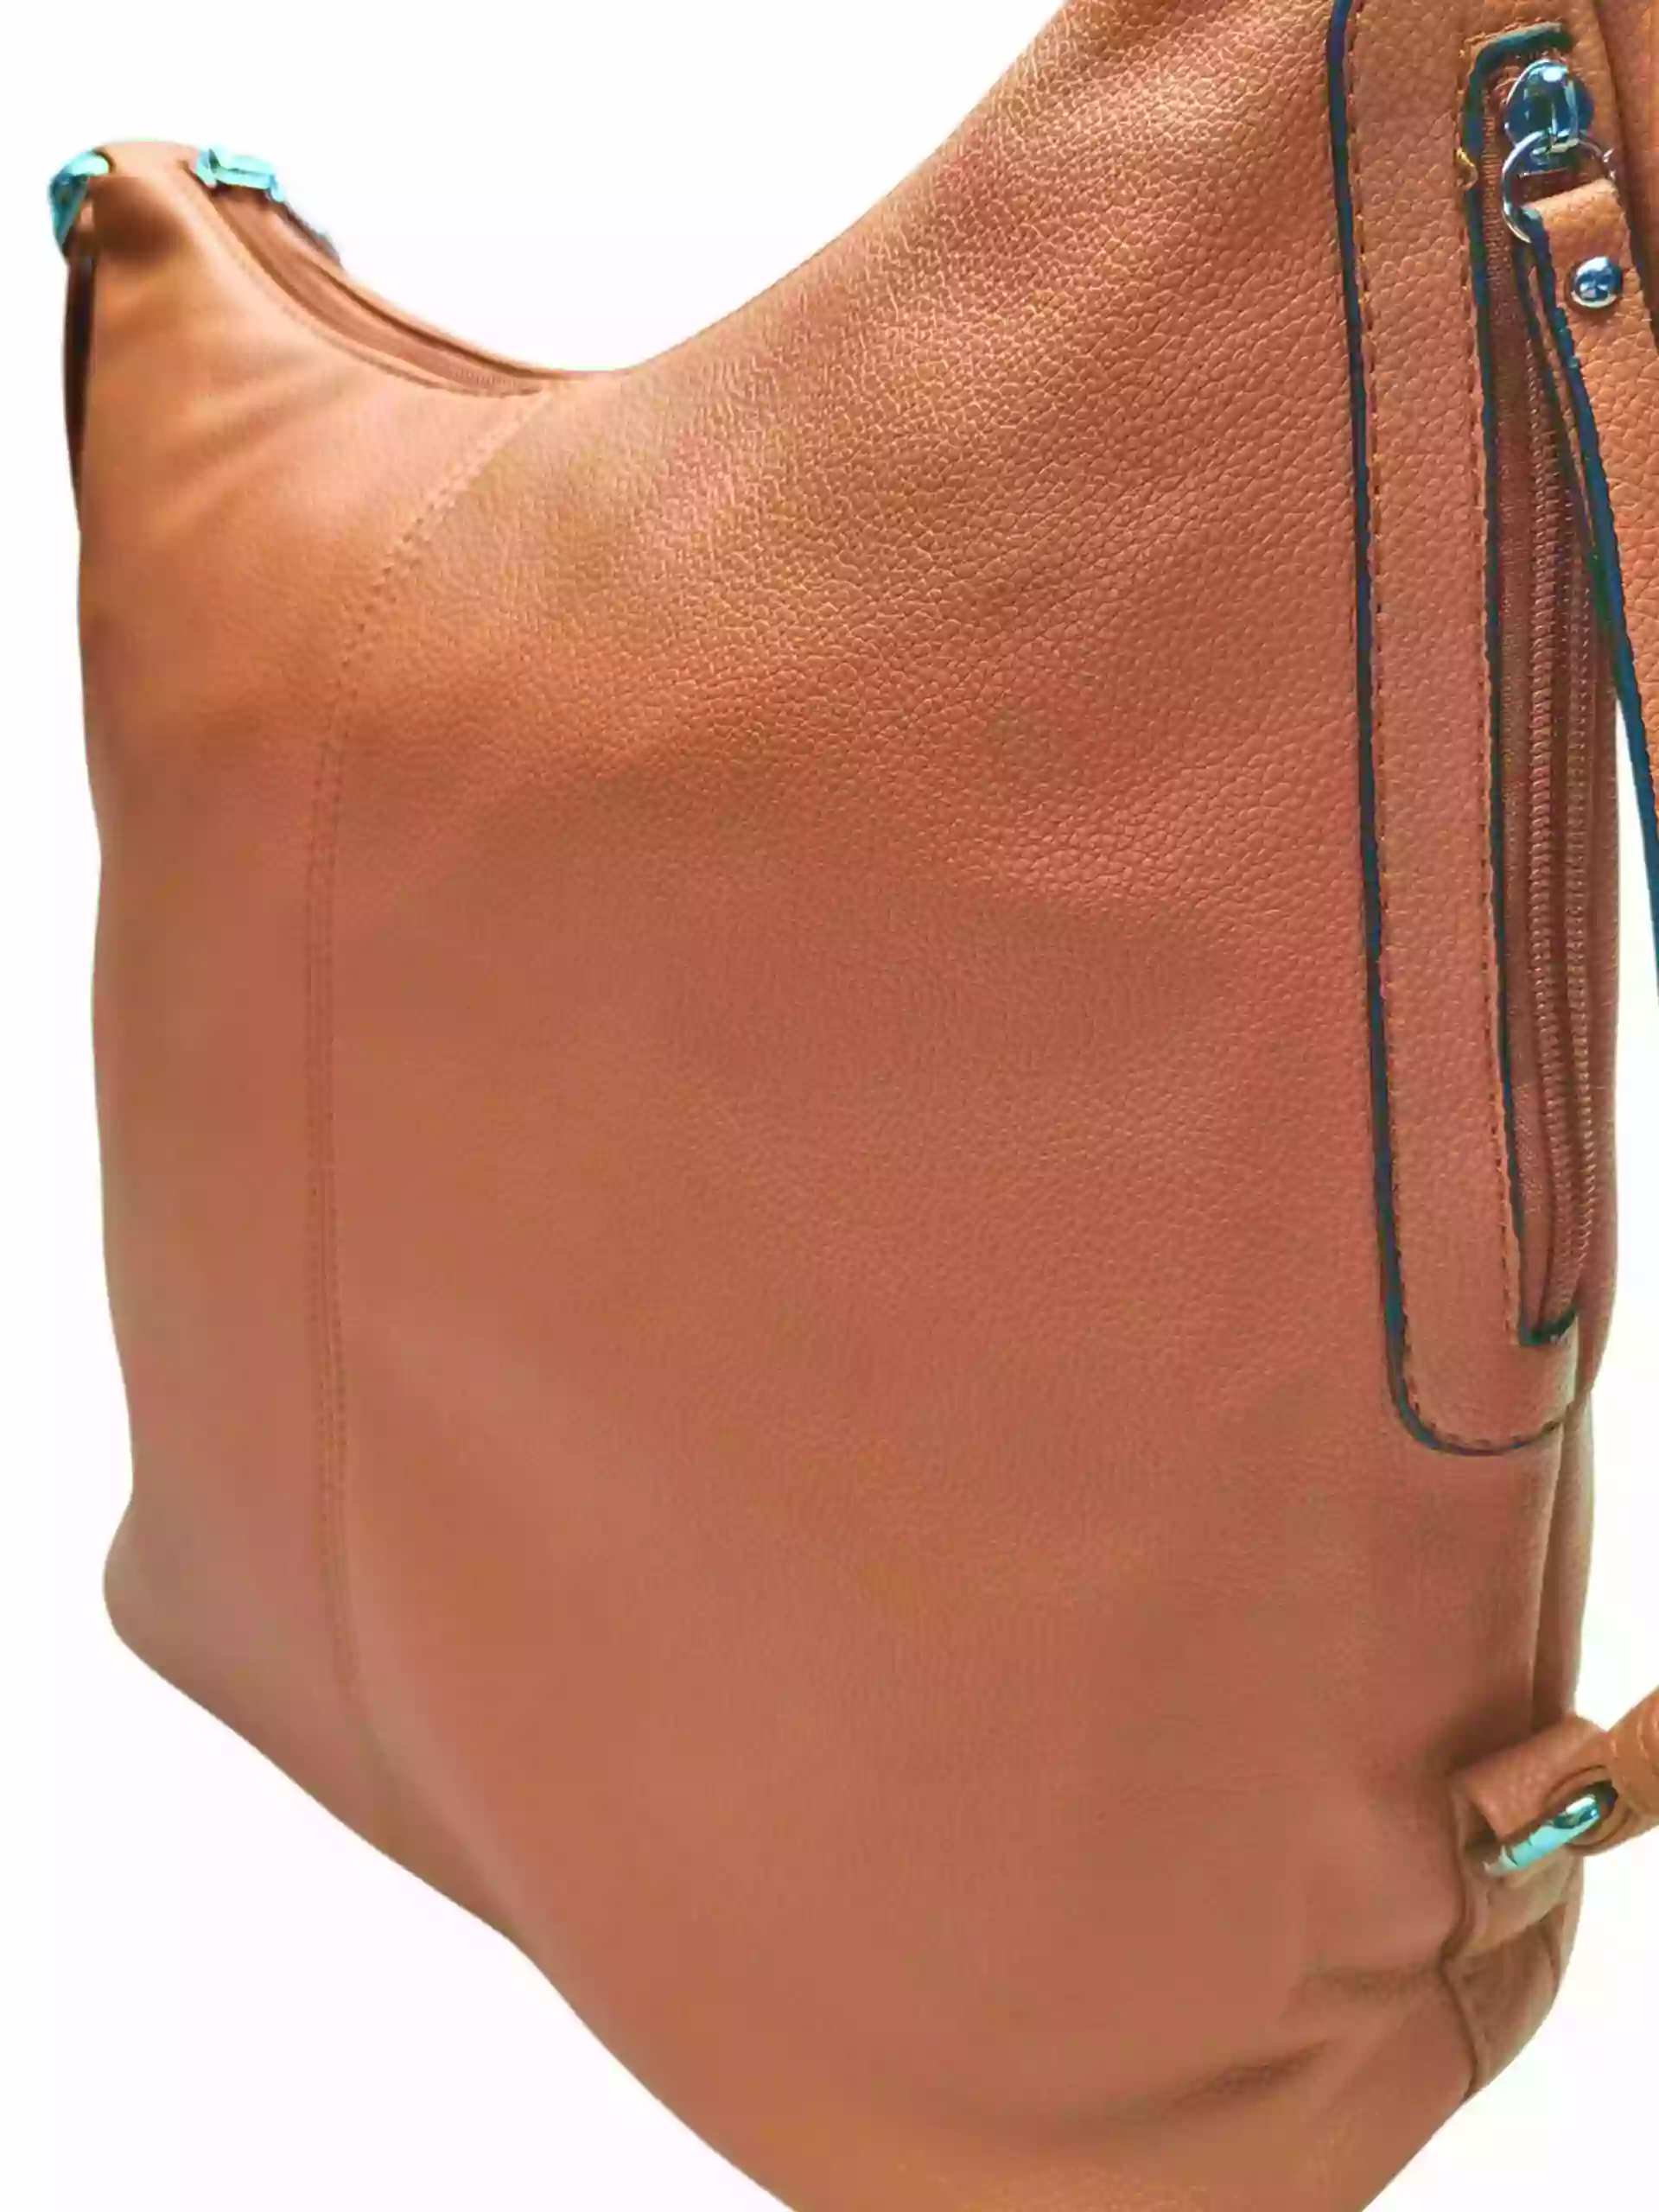 Velký středně hnědý kabelko-batoh s bočními kapsami, Tapple, 9314-3, detail kabelko-batohu